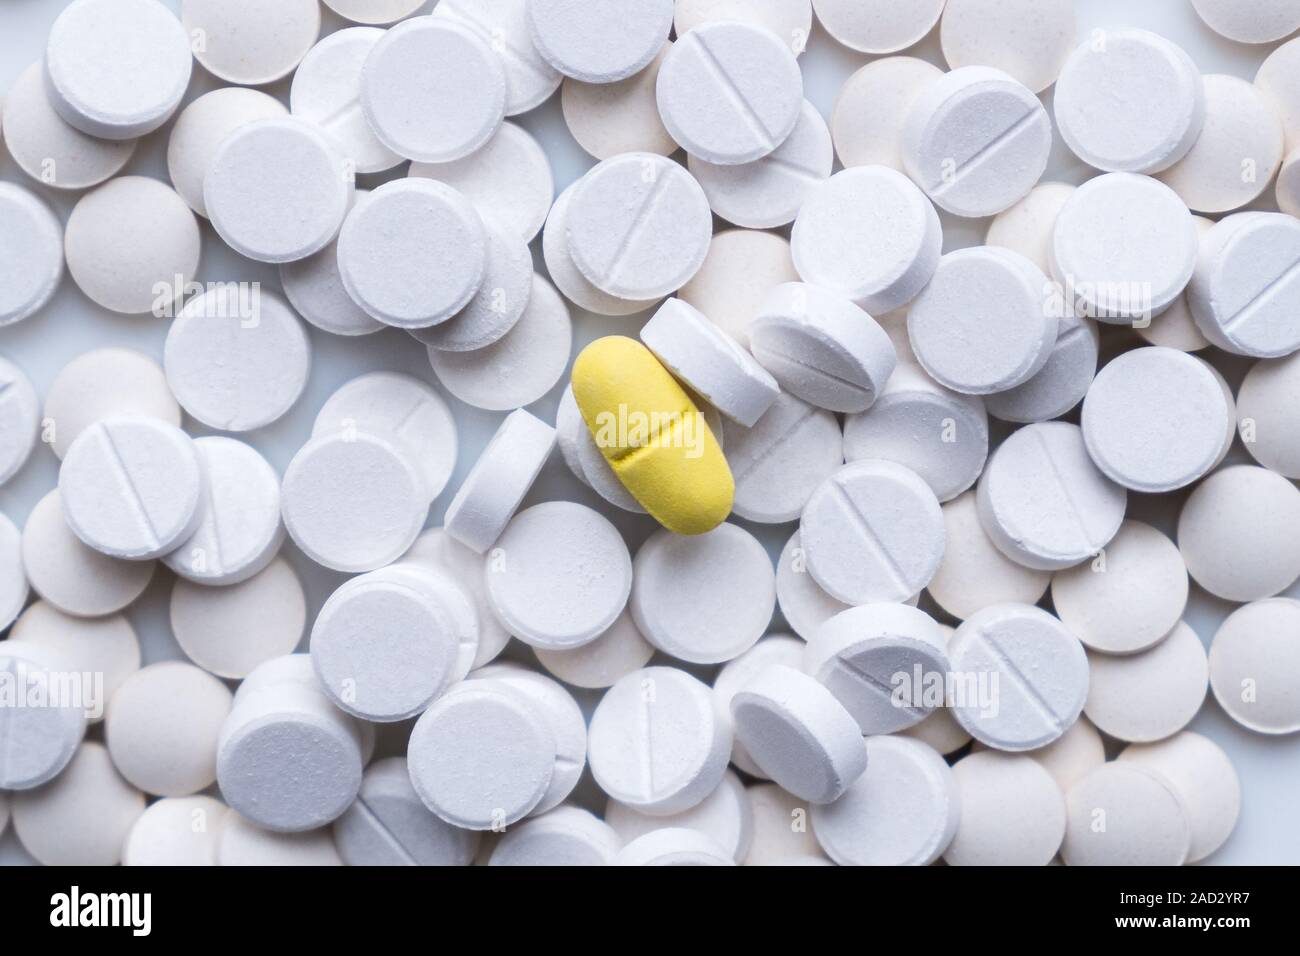 Montón de pastillas de color blanco y alrededor de uno amarillo. El concepto de diferentes alternativas de tratamiento o placebo Foto de stock